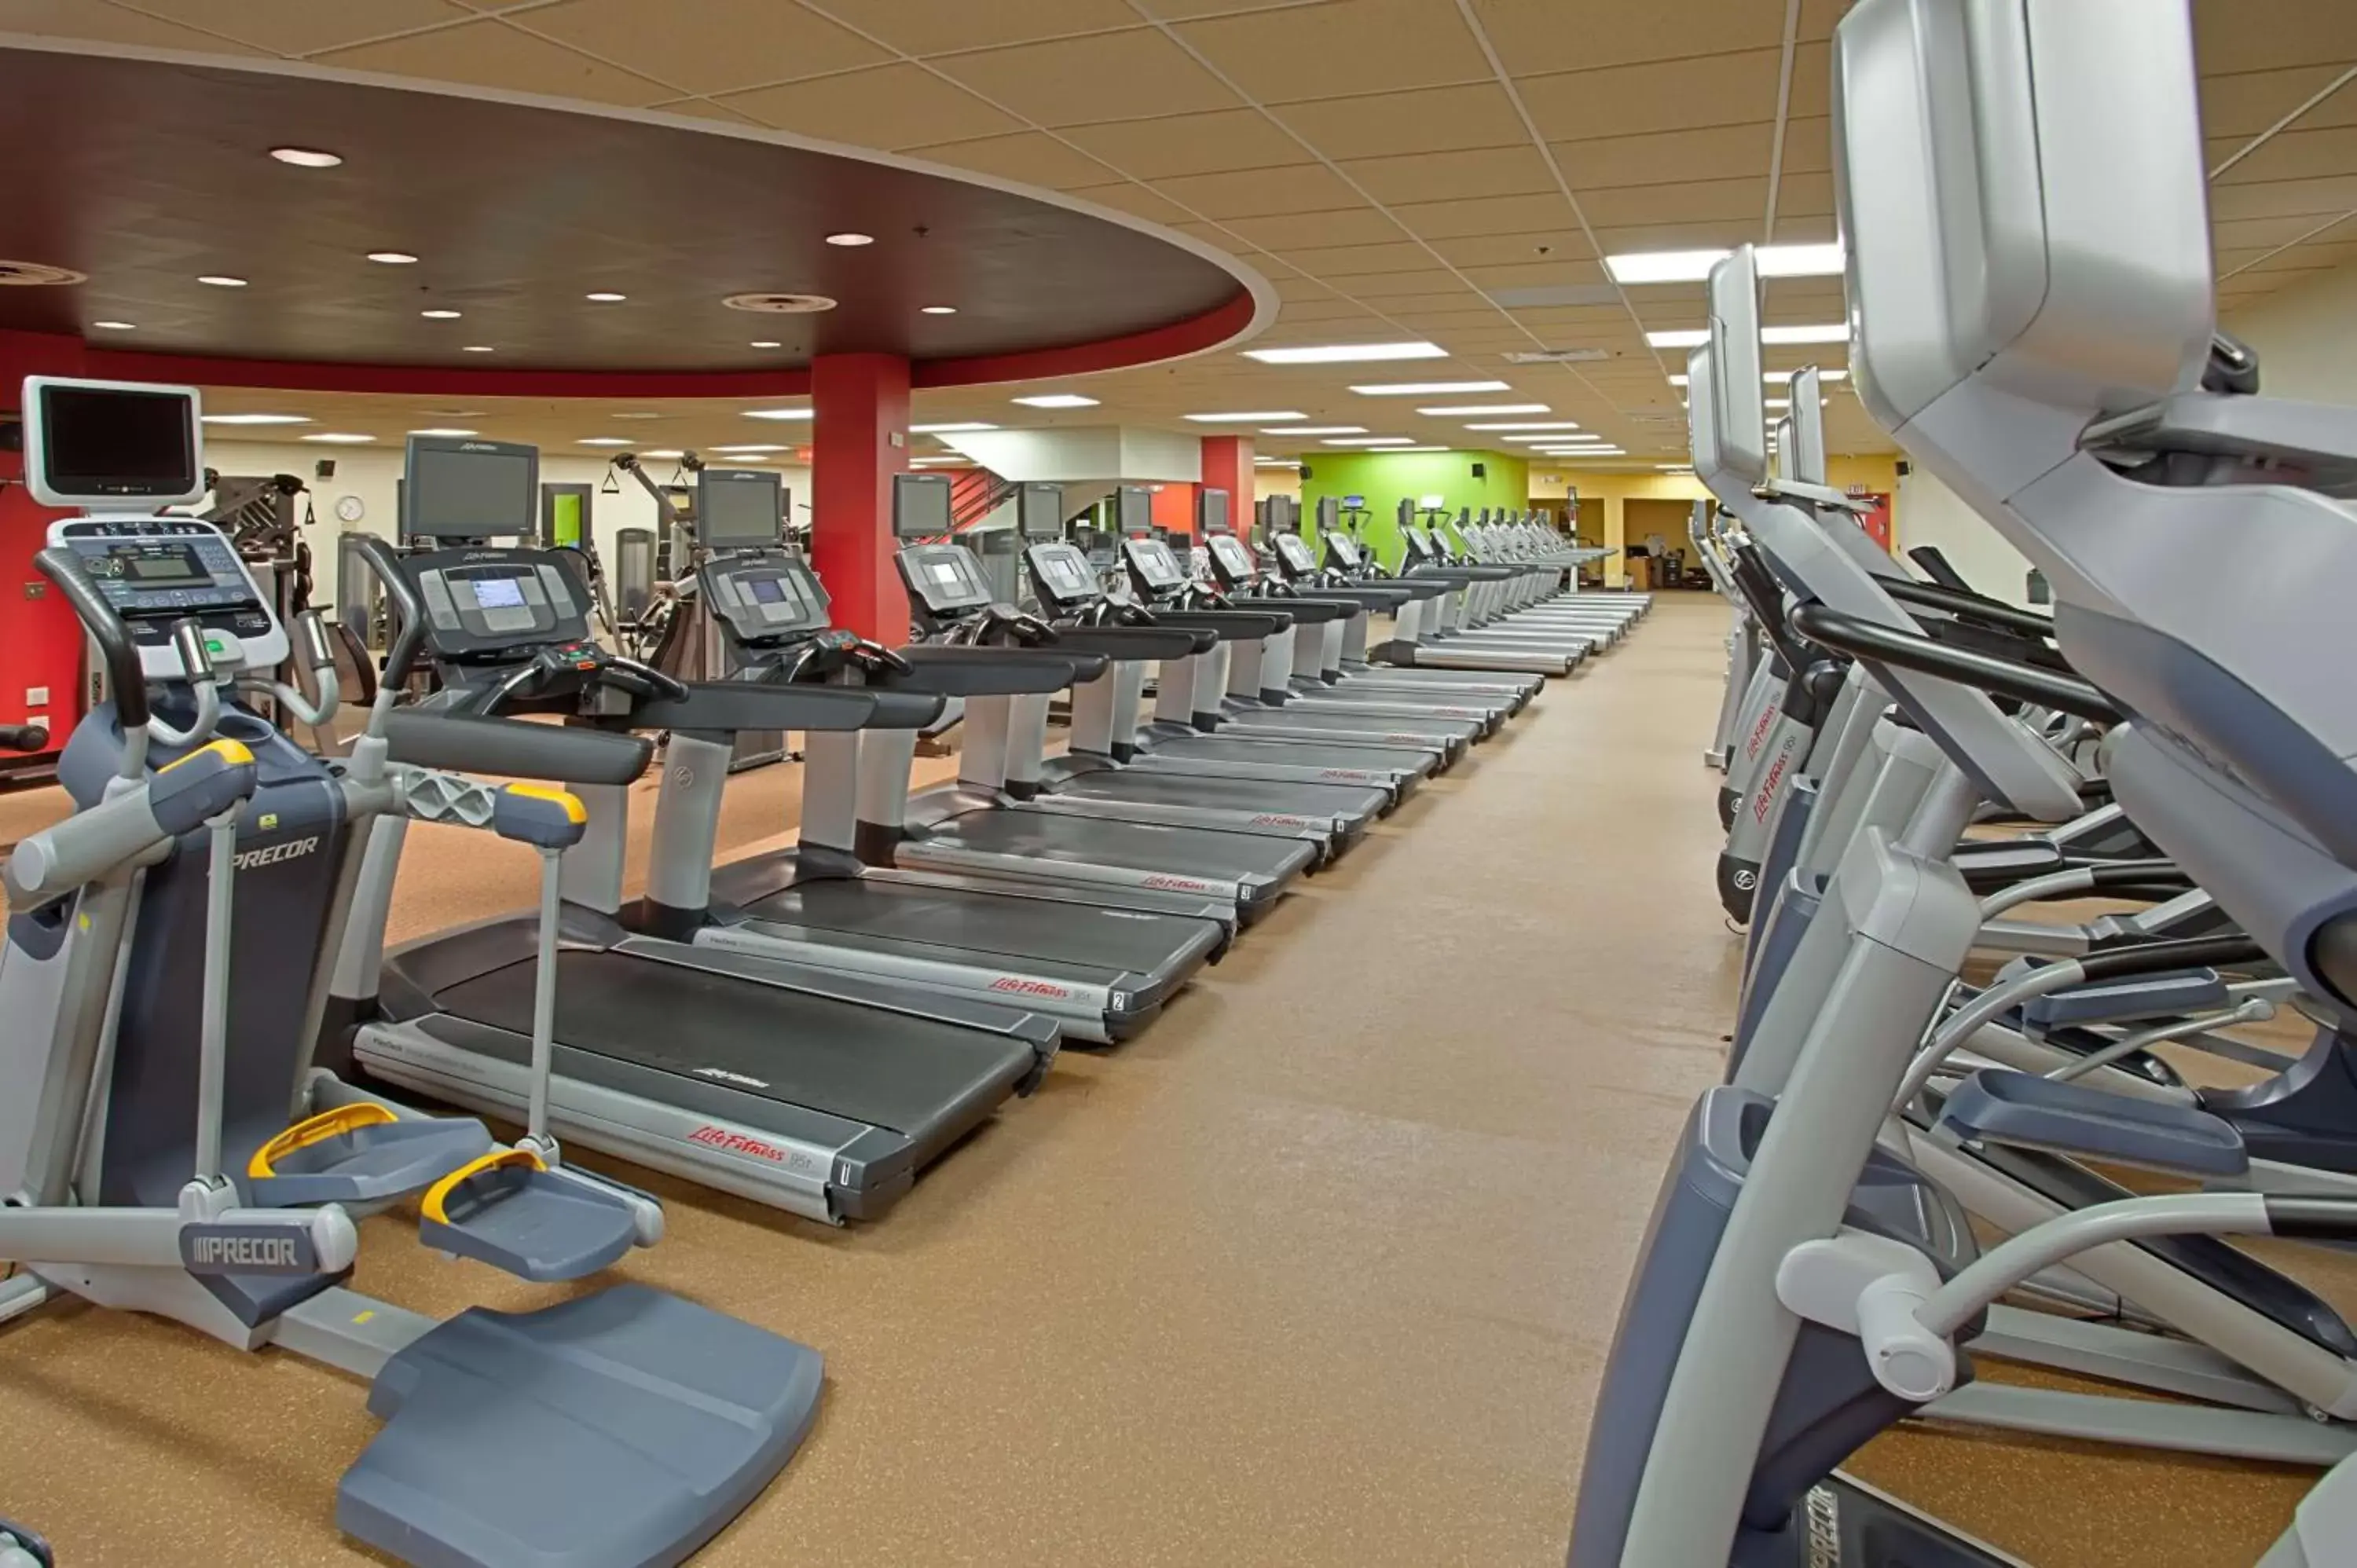 Fitness centre/facilities, Fitness Center/Facilities in Hyatt Regency Morristown